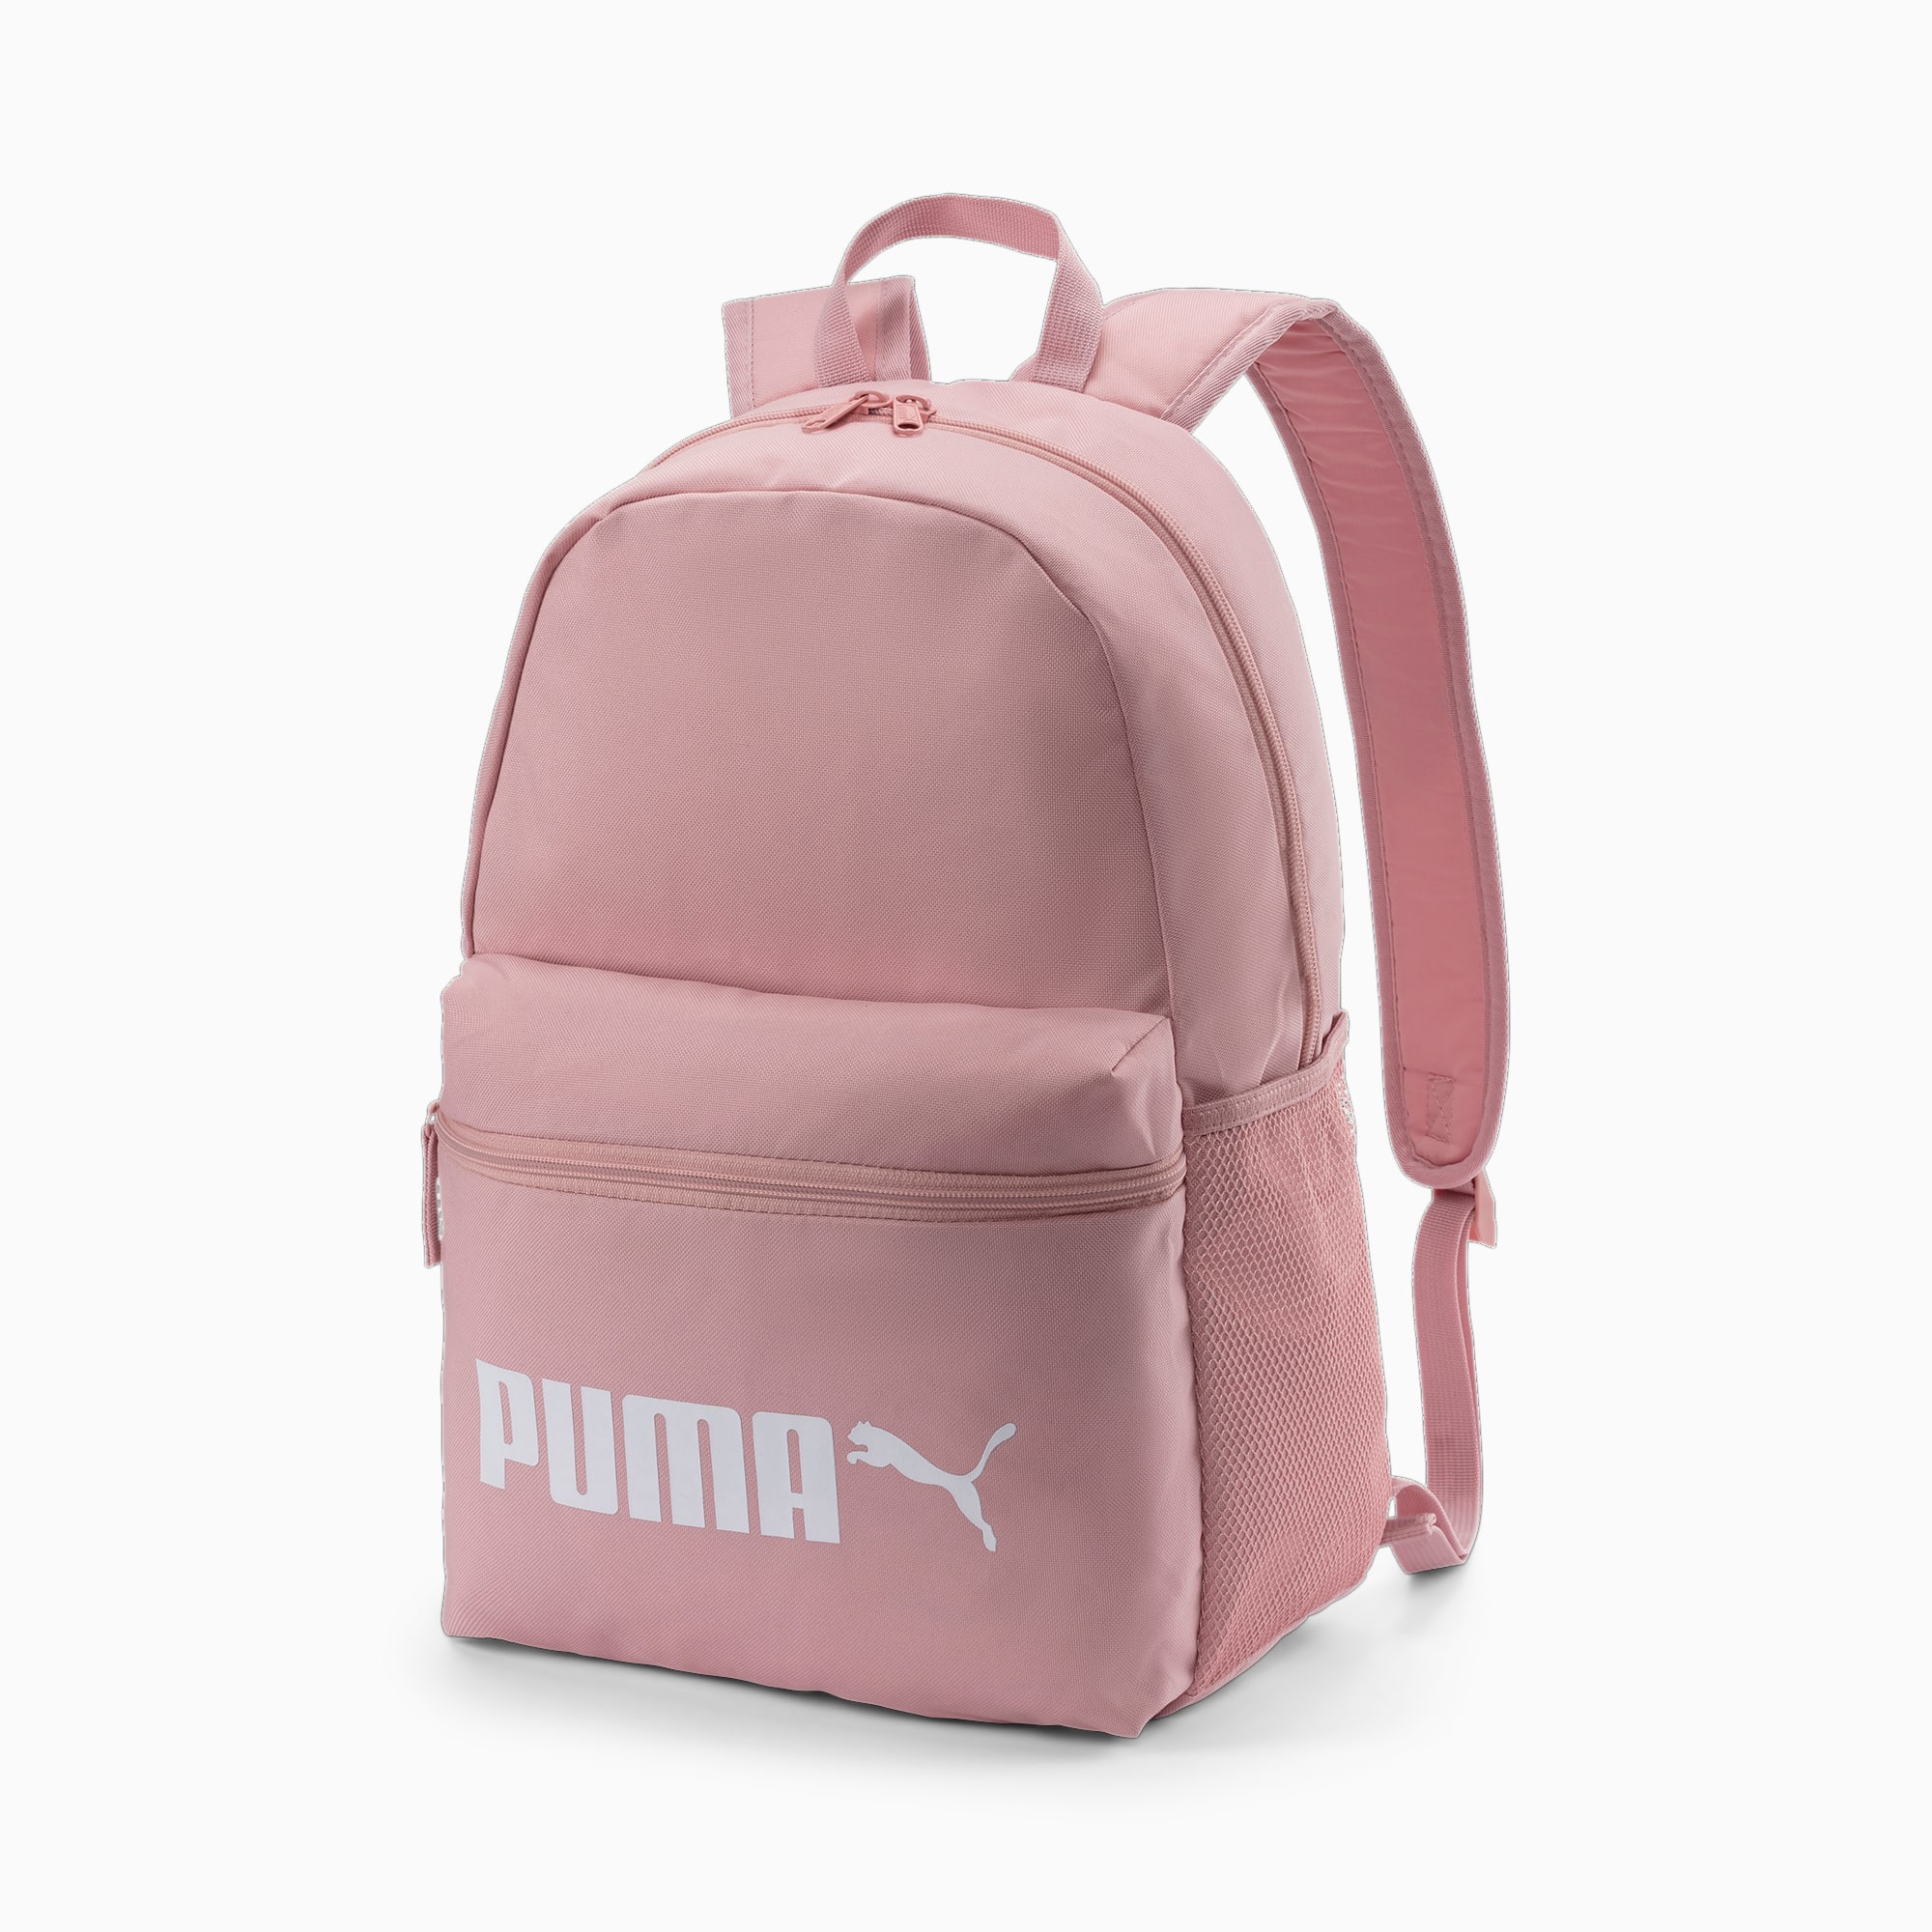 puma phase backpack size